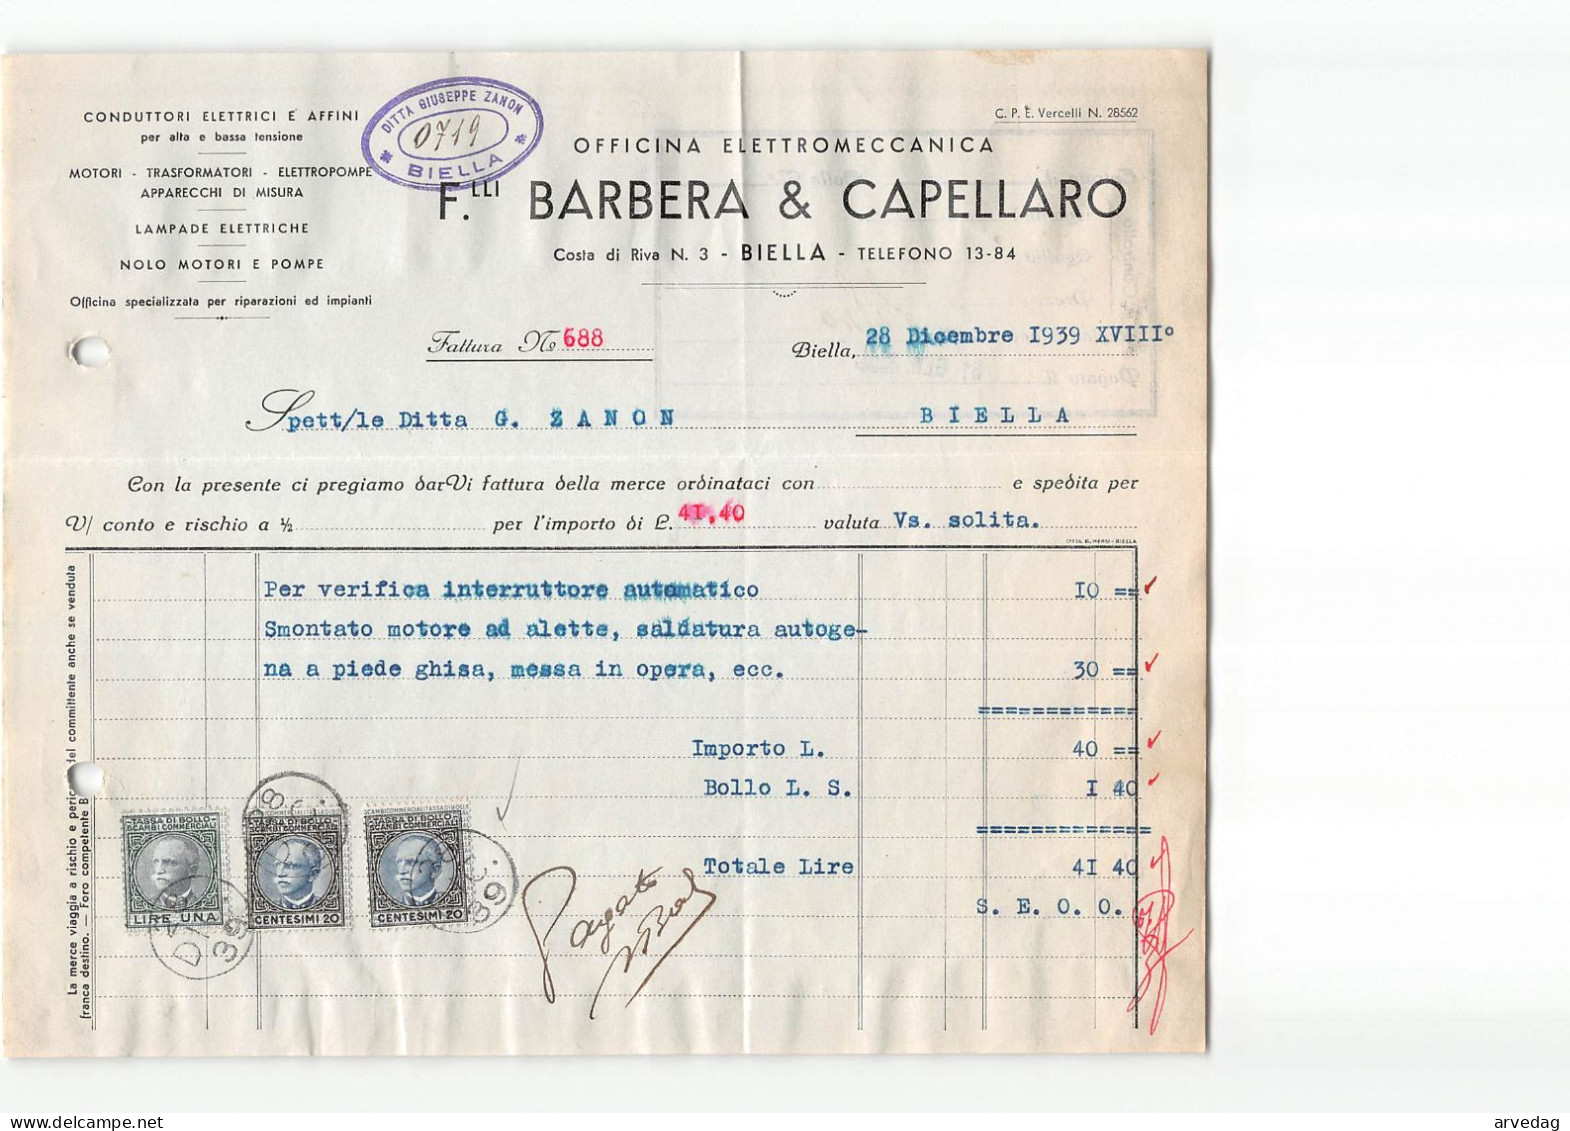 AG2607 BARBERA & CAPELLARO OFFICINA ELETTROMECCANICA - FATTURA - Italië